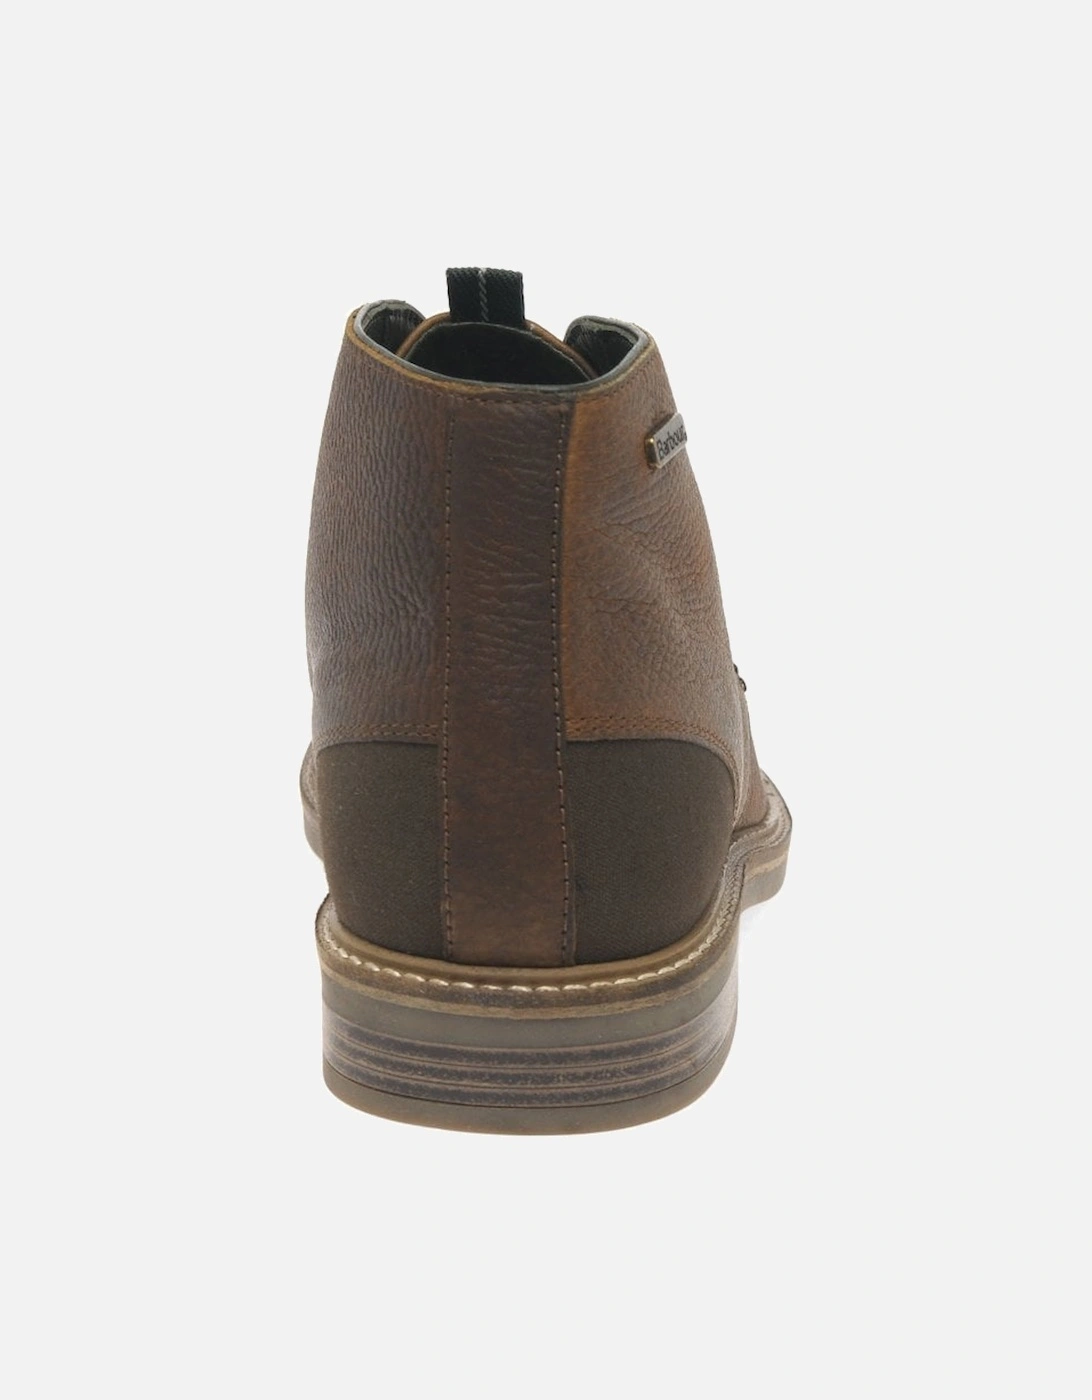 Readhead Mens Leather Chukka Boots